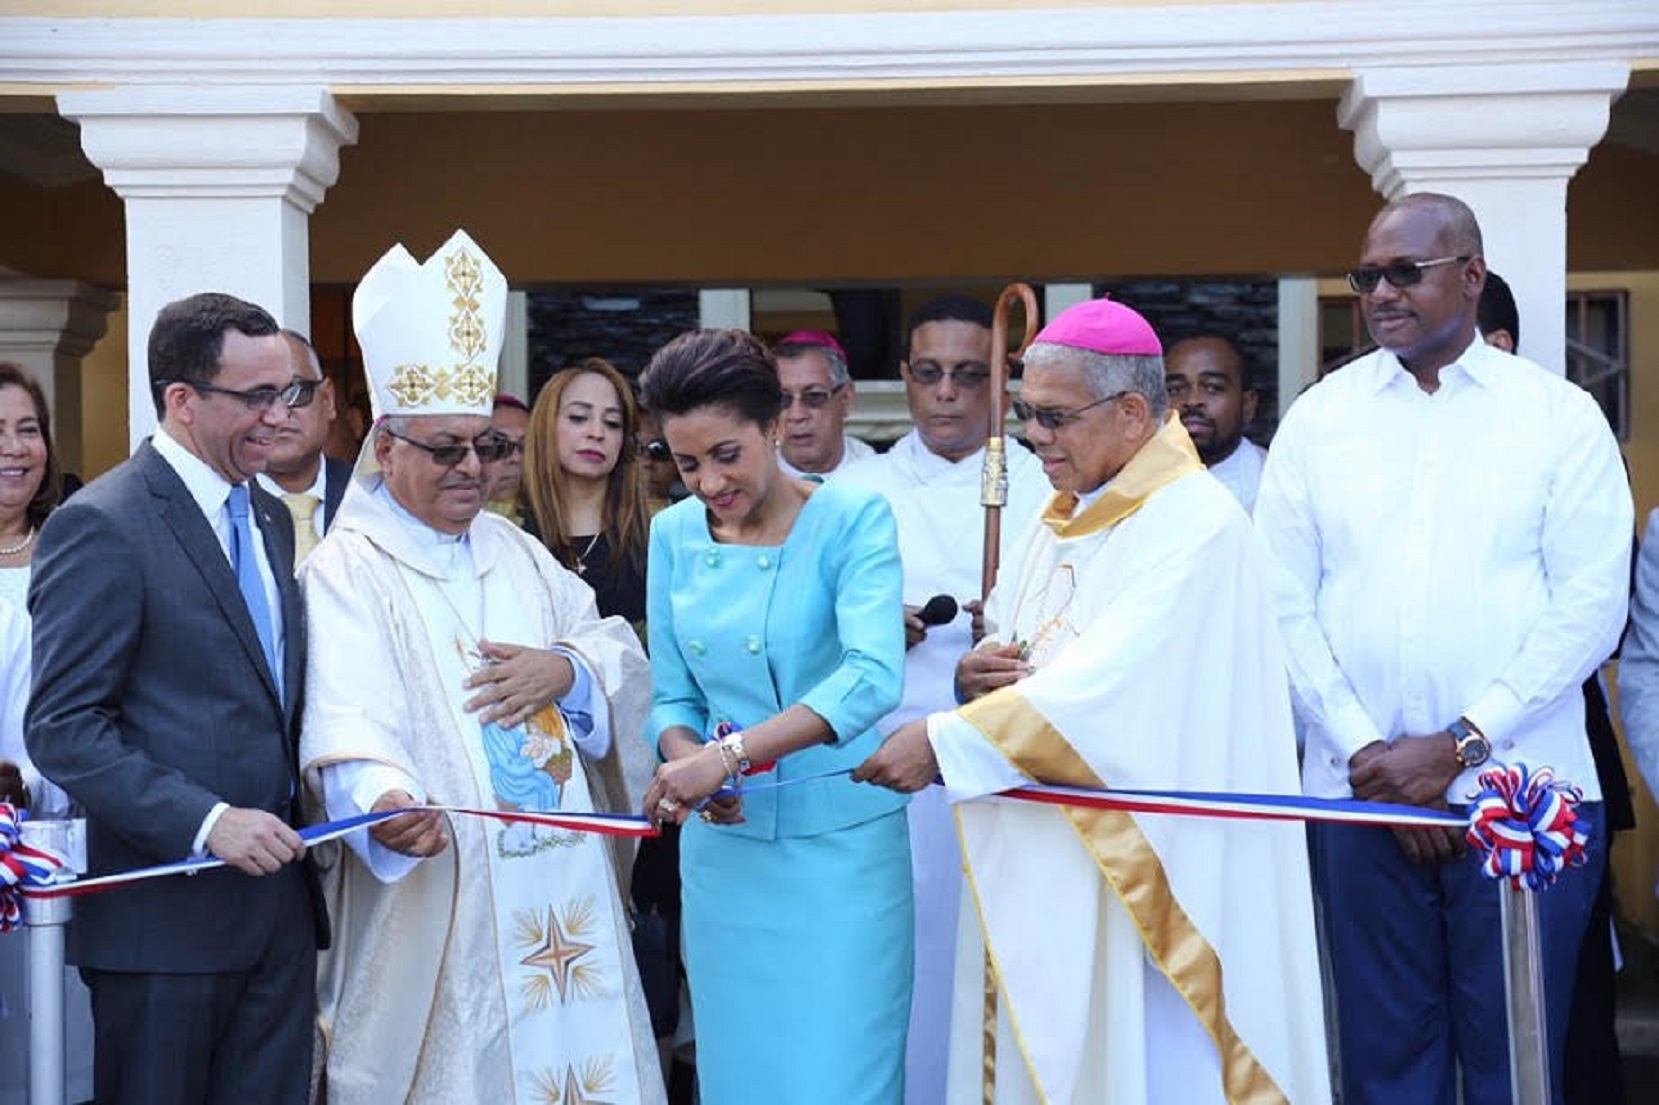 REPÚBLICA DOMINICANA: Primera dama asiste a eucaristía por 40 años de ordenación de monseñor Benito Ángeles e inauguración oficinas Vicaría Episcopal